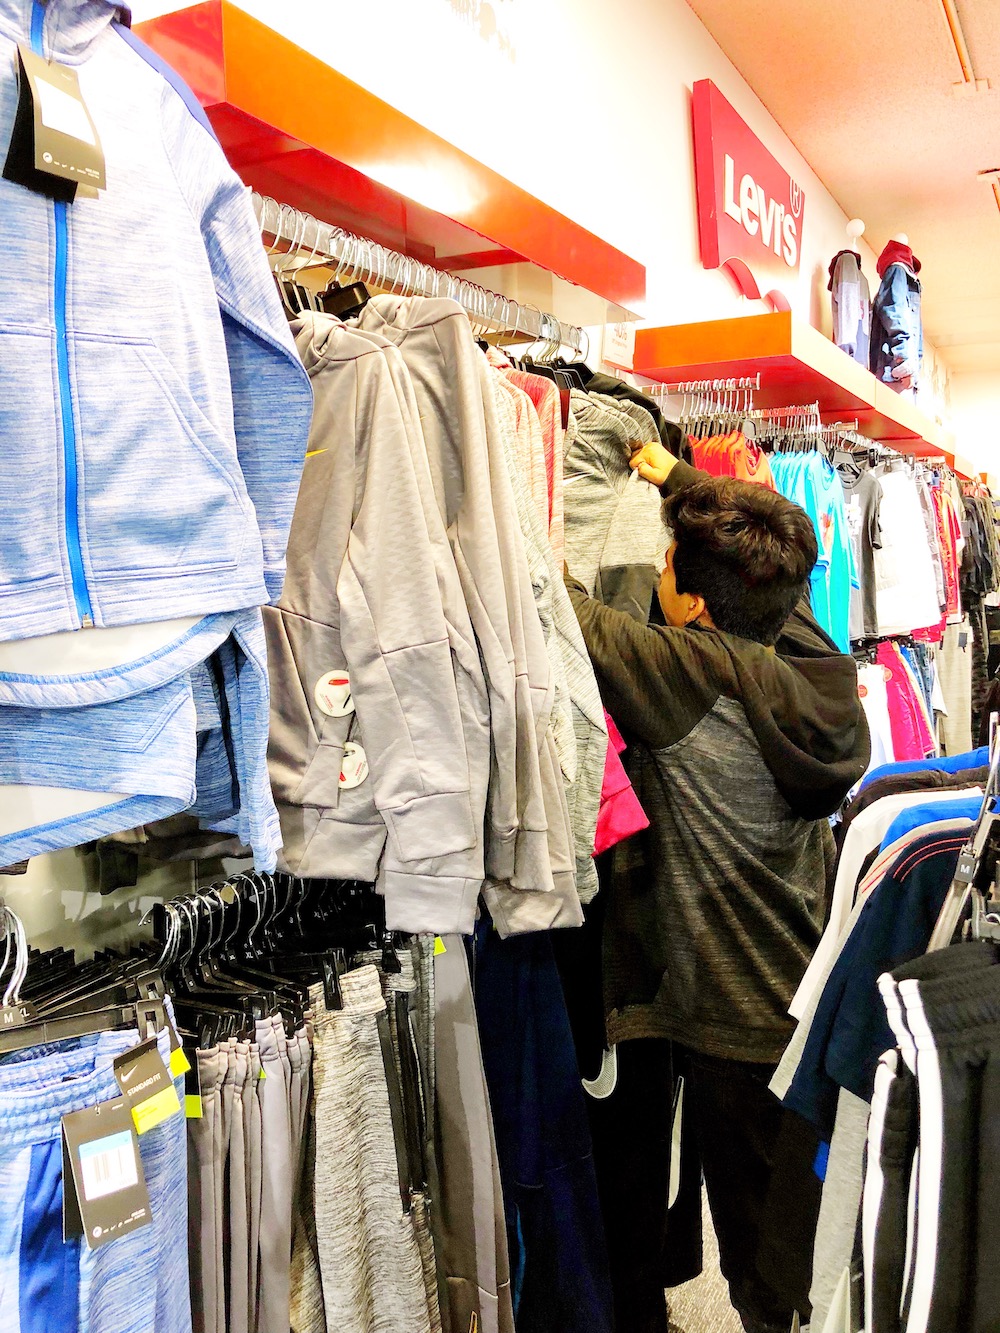 Shopping for sweaters at Macy's, MainPlace Mall | livingmividaloca.com | #livingmividaloca #shopmainplace #santaana #mainplacemall #macys